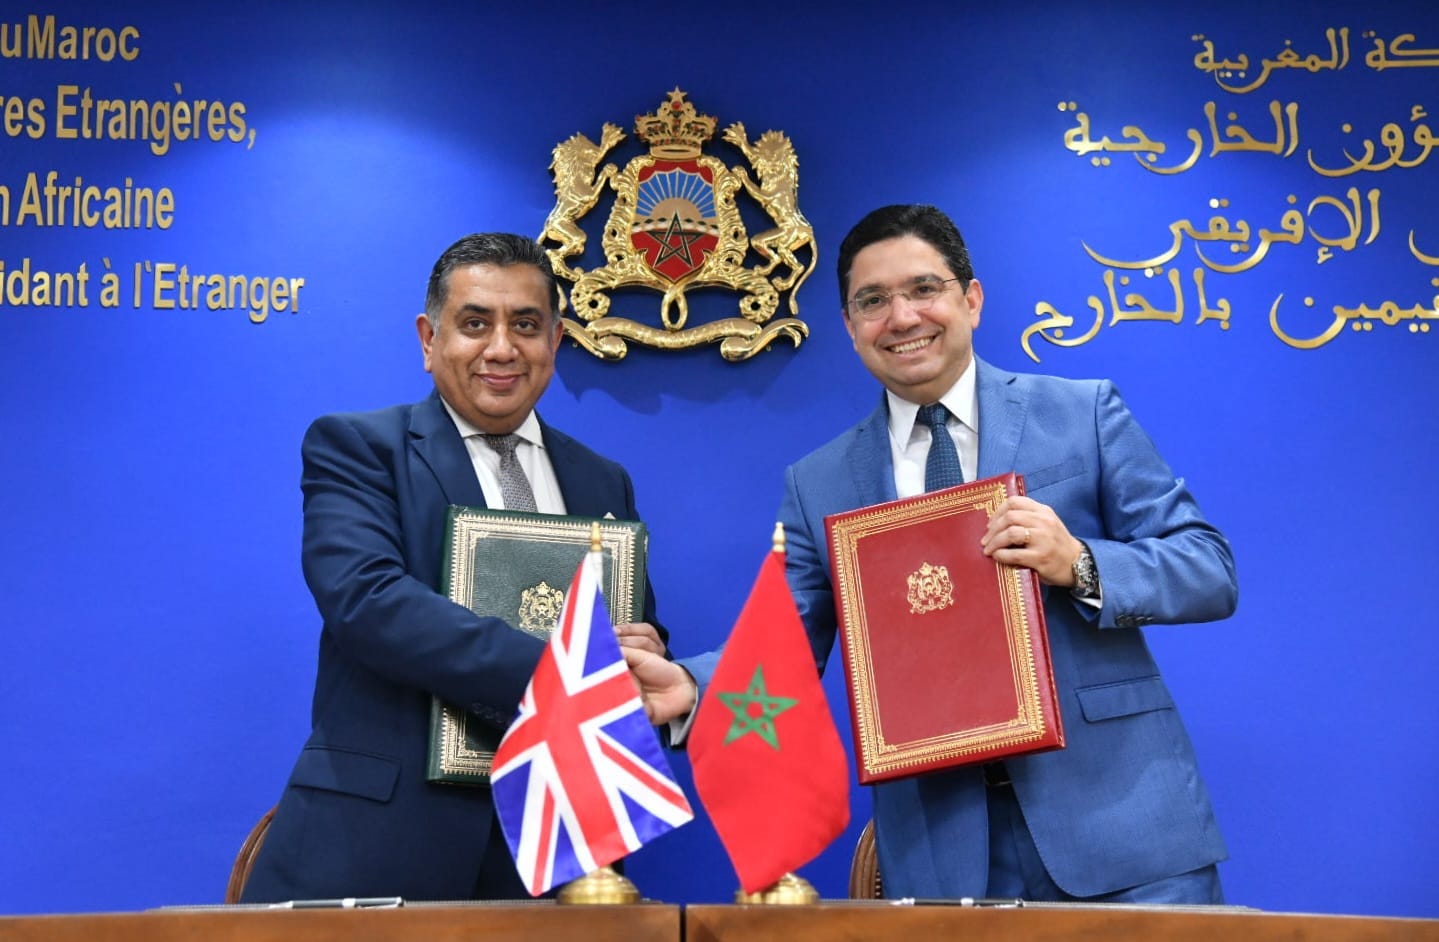 Le Maroc et le Royaume-Uni signent un cadre stratégique de coopération sur l'action climatique, l'énergie propre et la croissance verte